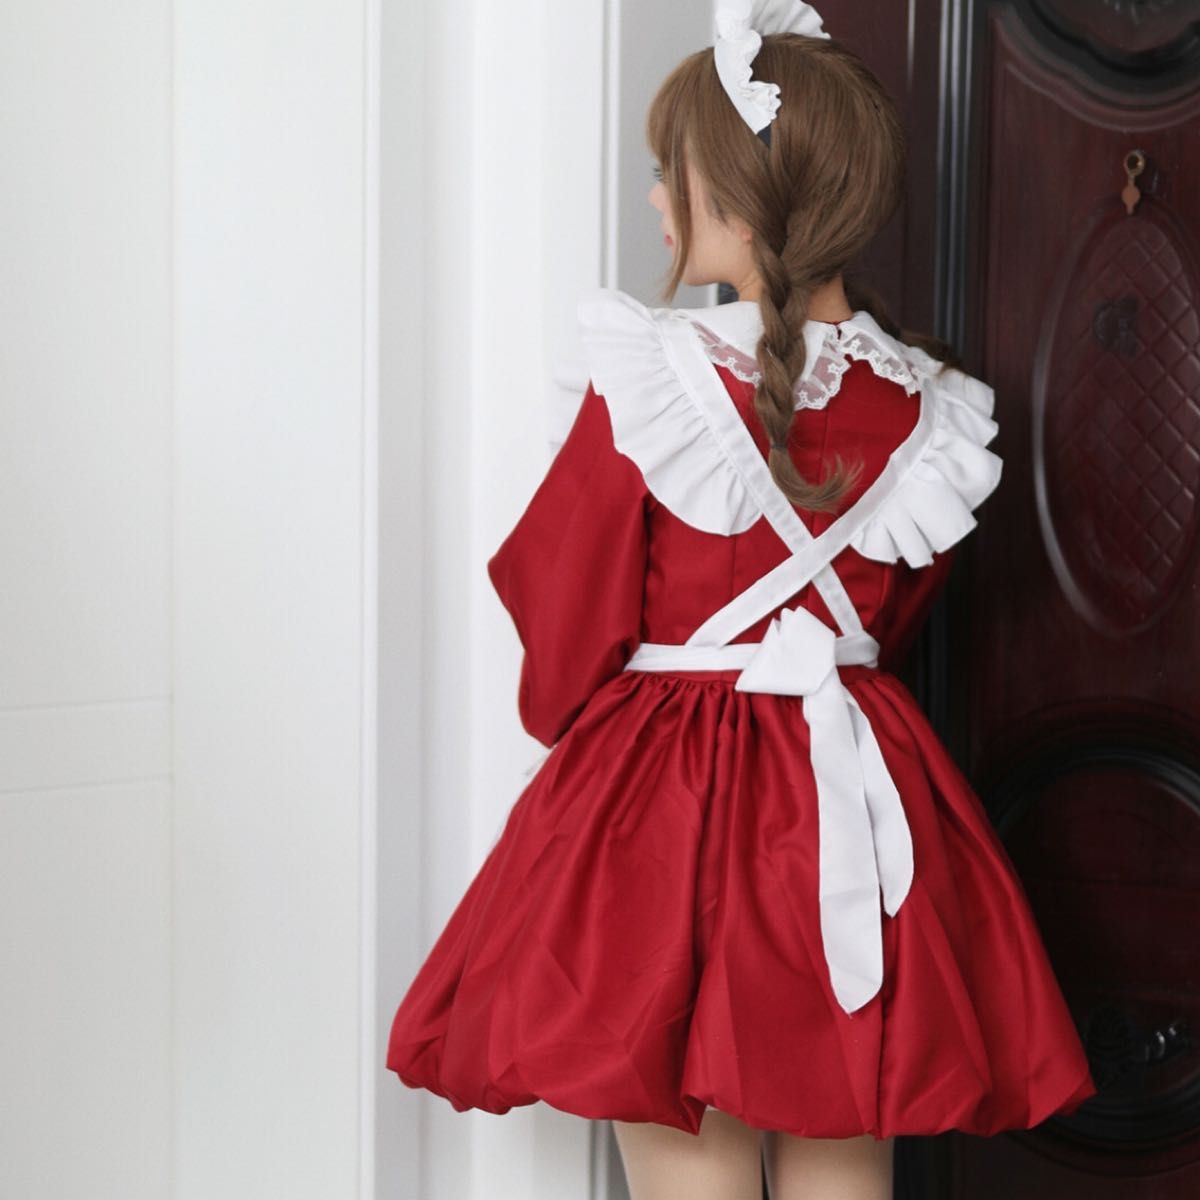 コスプレ 衣装 メイド服 長袖 地雷系 量産型 赤色 アイドル バルーンスカート ゆめかわいい クリスマス パーティー イベント